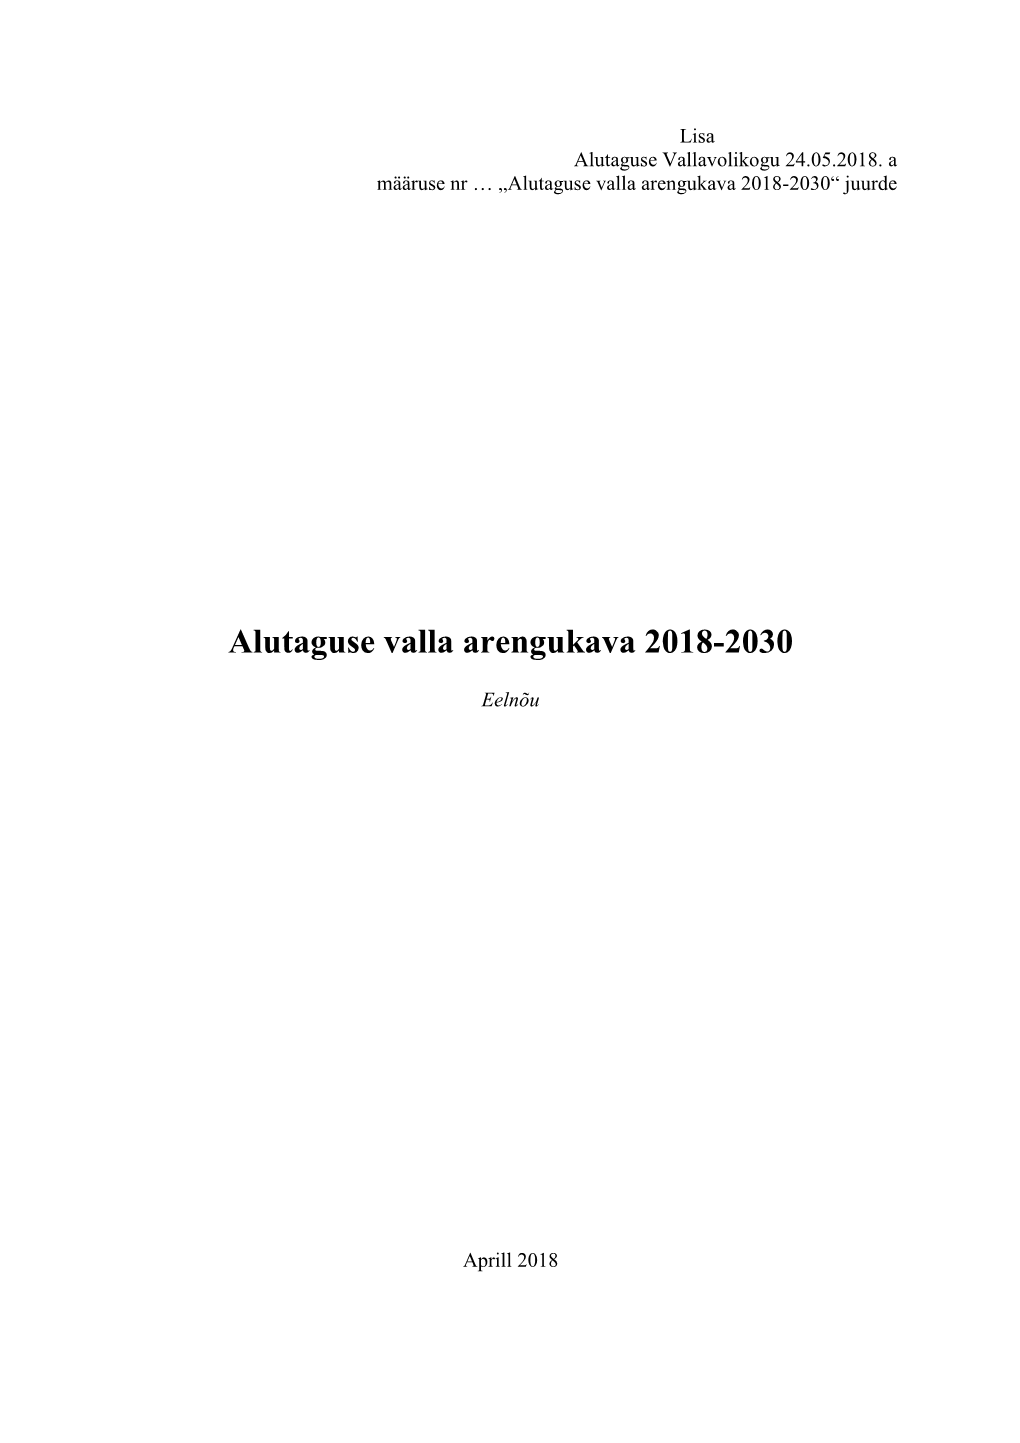 Alutaguse Valla Arengukava 2018-2030“ Juurde